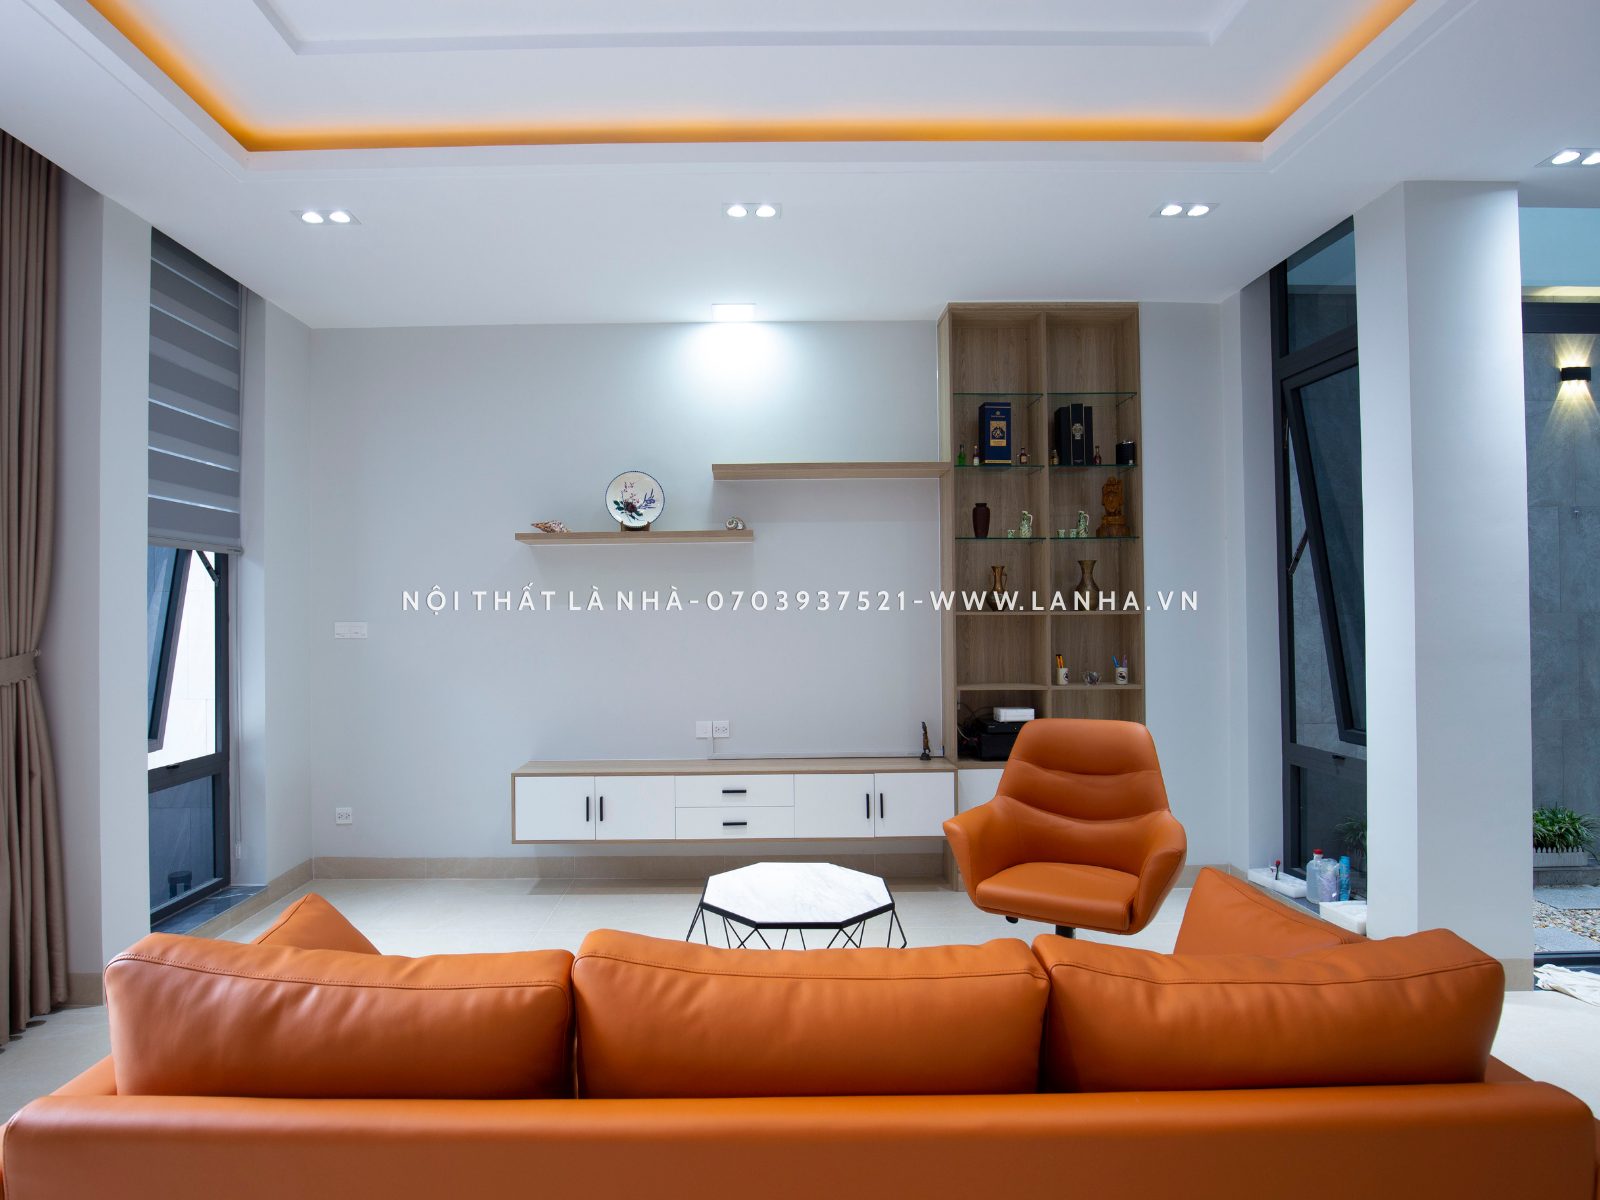 Phòng khách với bộ sofa màu cam ấn tượng